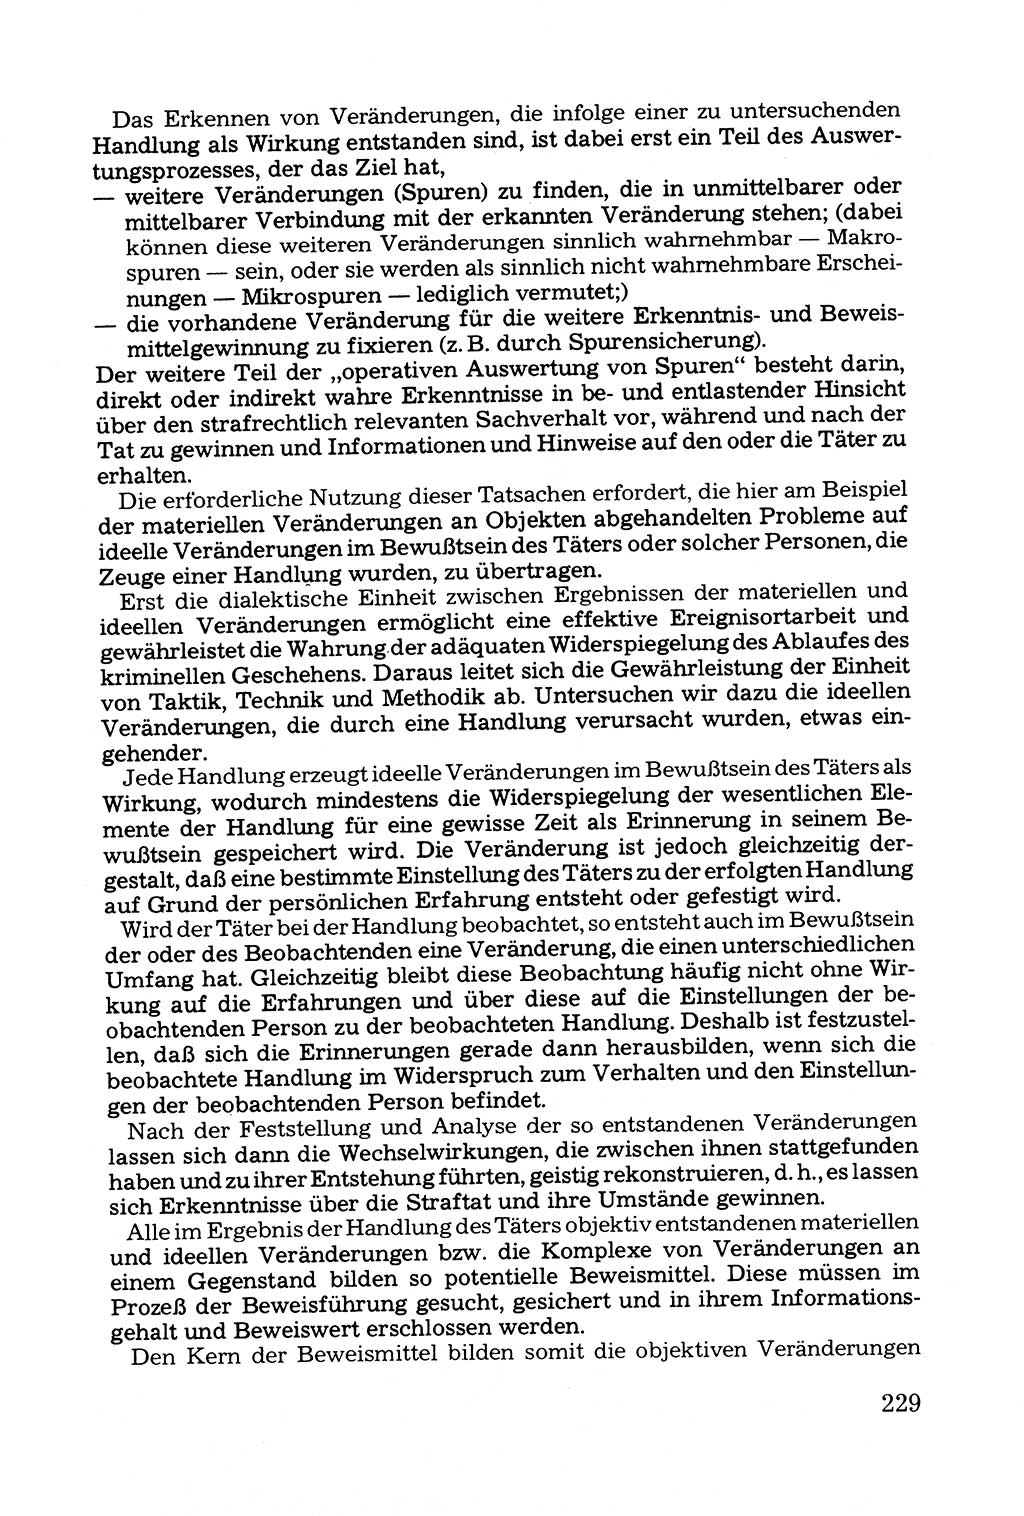 Grundfragen der Beweisführung im Ermittlungsverfahren [Deutsche Demokratische Republik (DDR)] 1980, Seite 229 (Bws.-Fhrg. EV DDR 1980, S. 229)